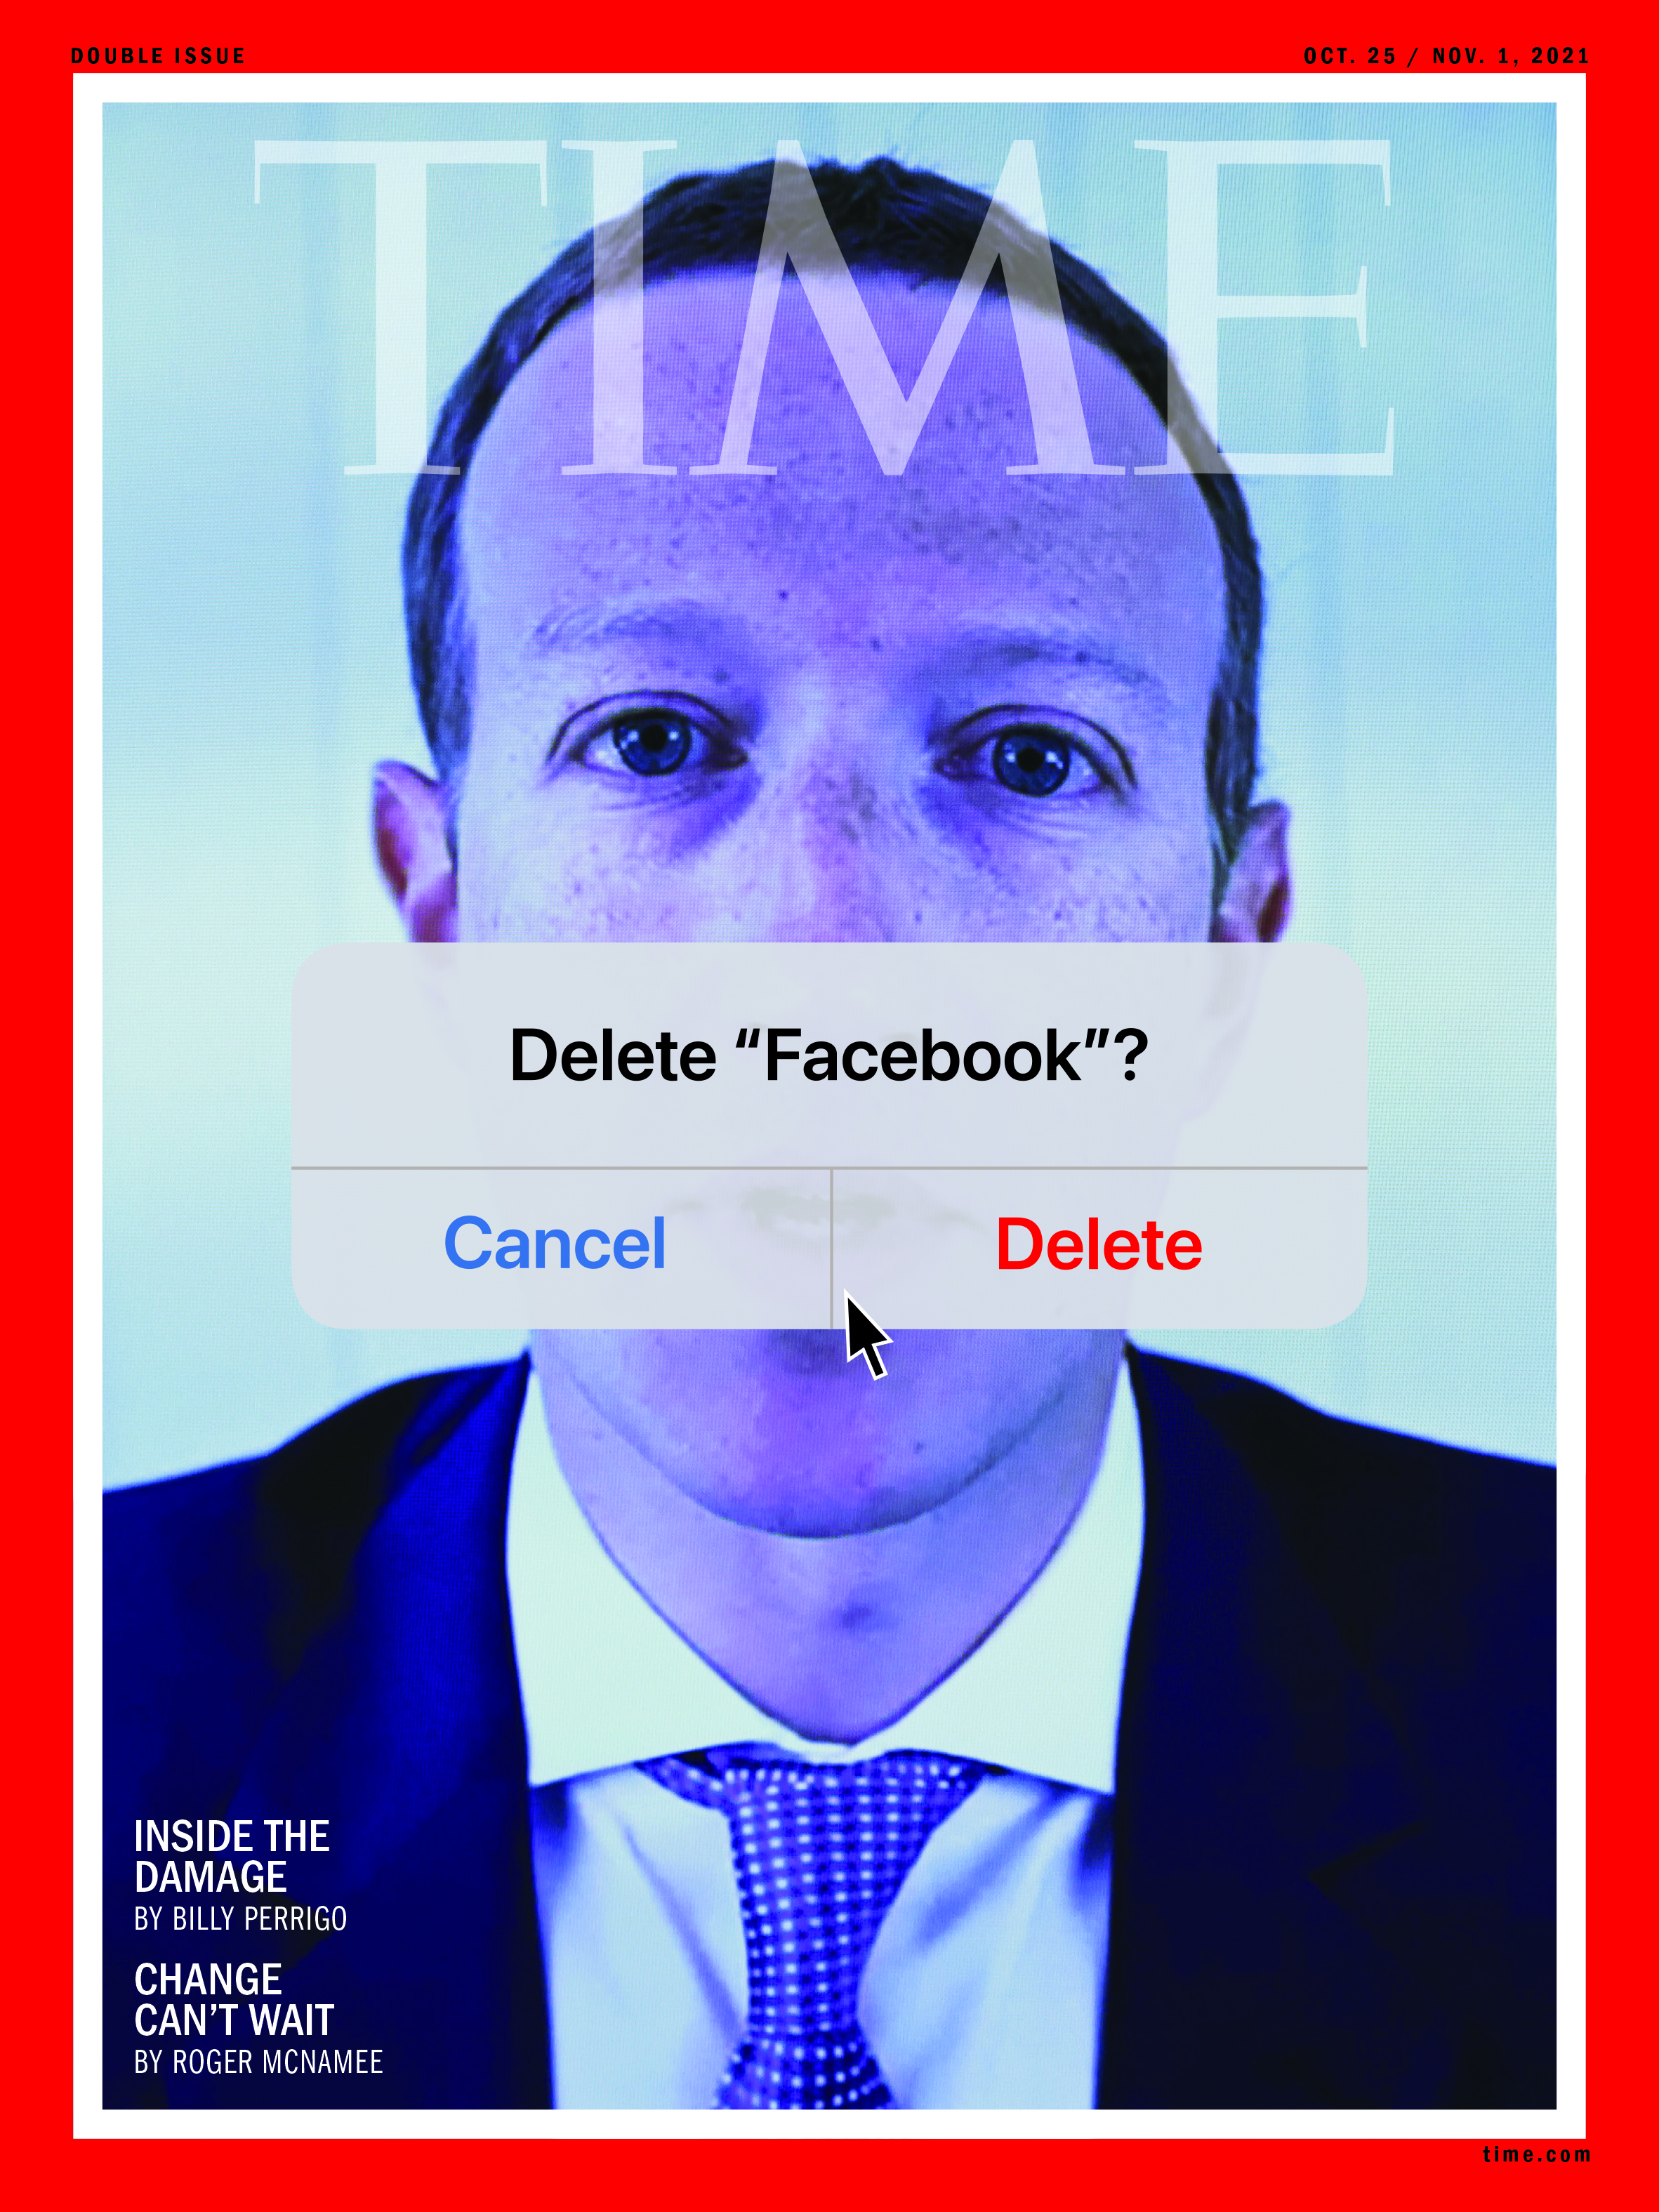 TIME - "Delete 'Facebook'?" October 25-November 1, 2021